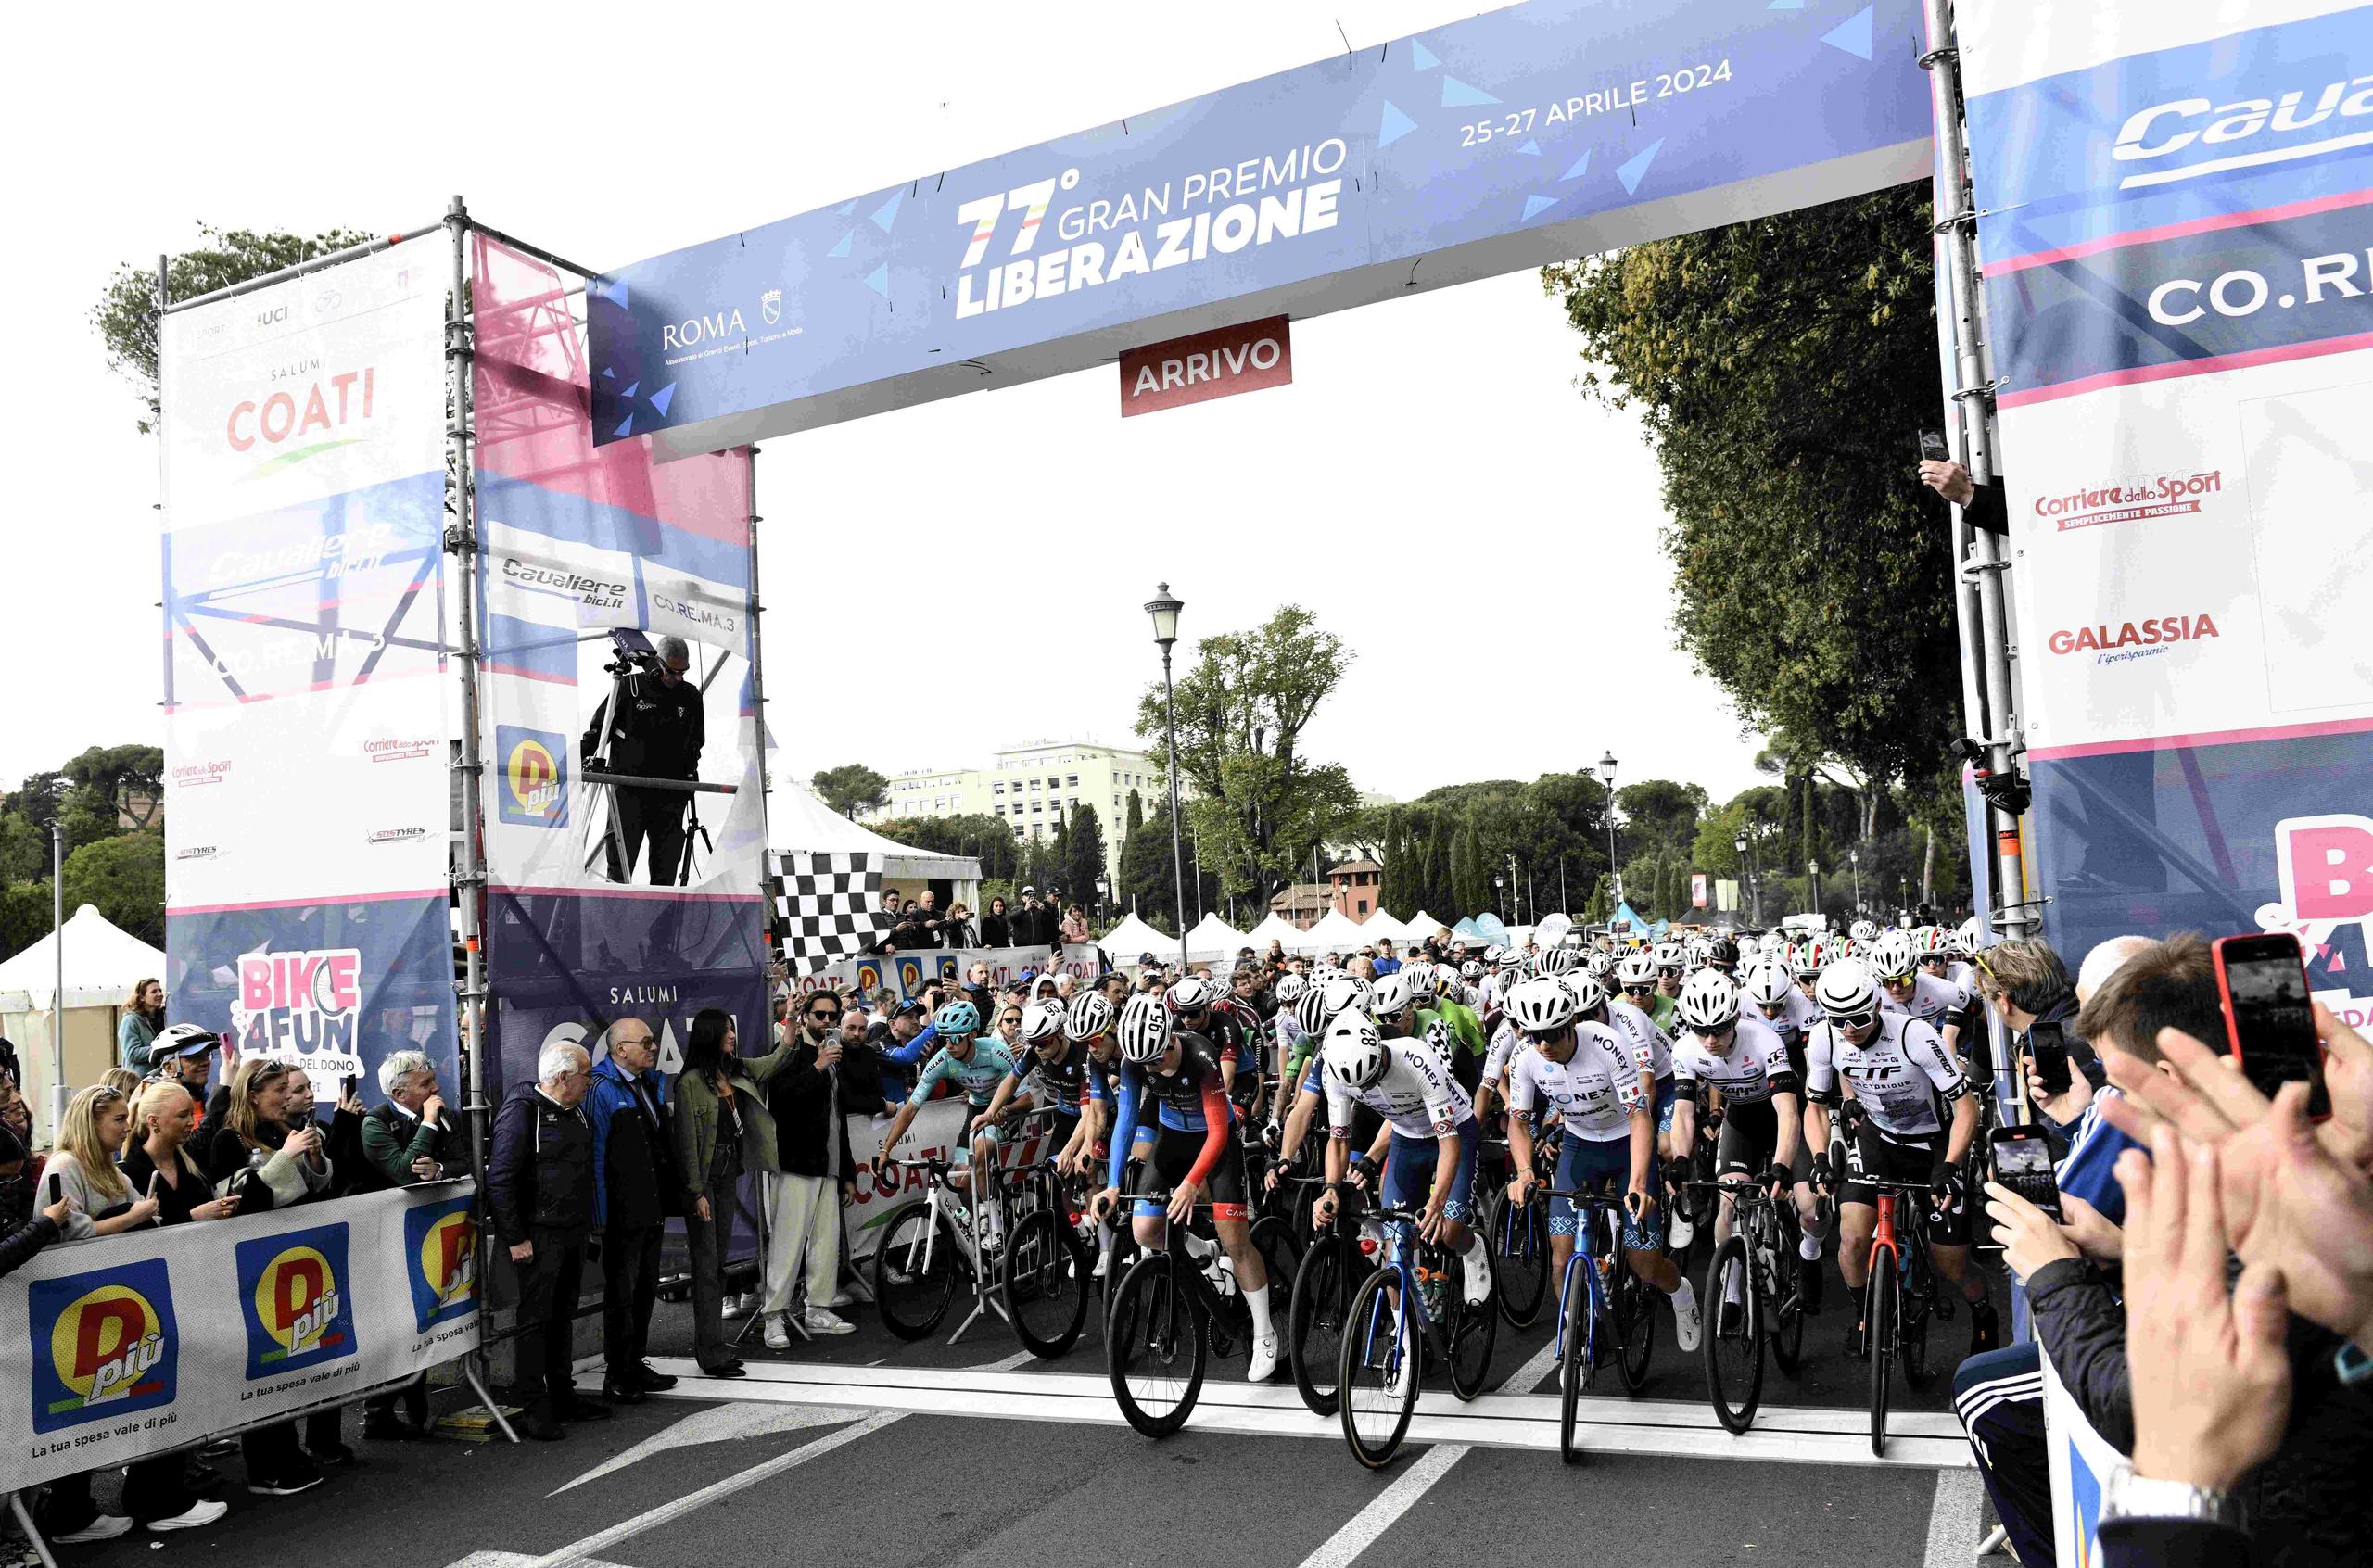 HIGHLIGHTS e INTERVISTE del Gran Premio Liberazione sono su "Oradelciclismo"